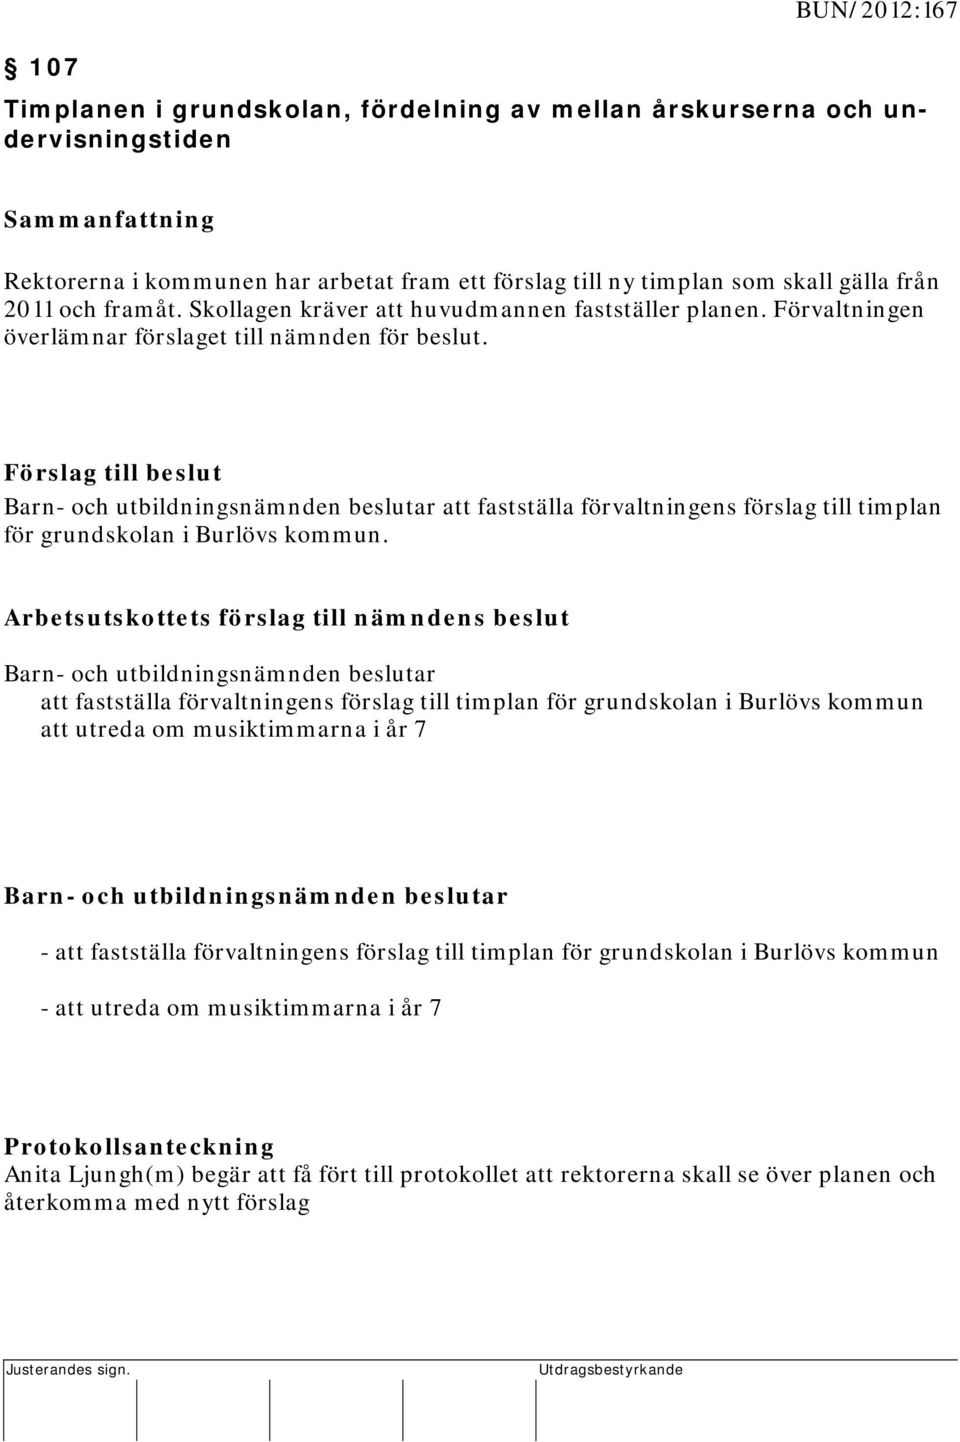 Förslag till beslut beslutar att fastställa förvaltningens förslag till timplan för grundskolan i Burlövs kommun.